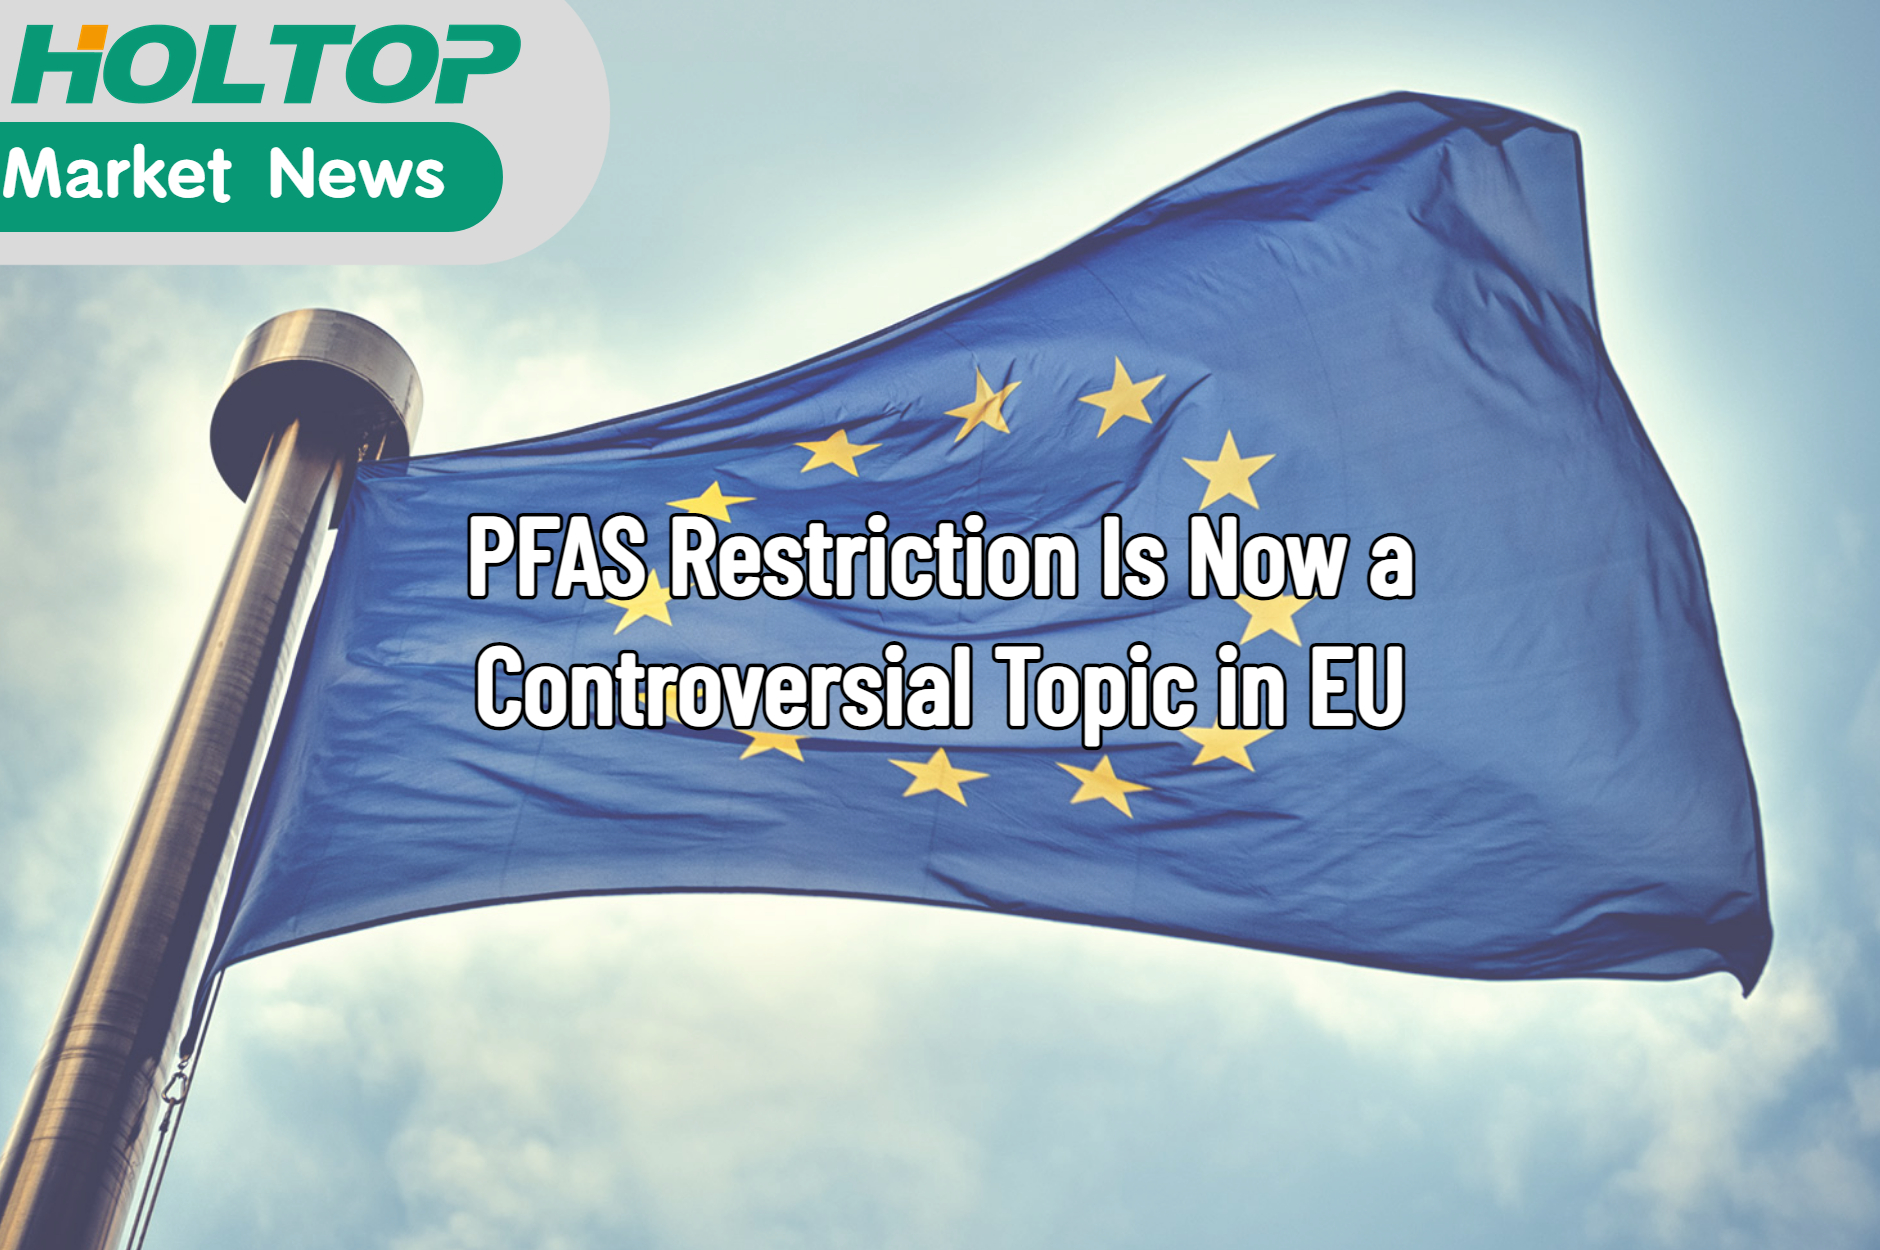 La restricción de PFAS es ahora un tema controvertido en la UE